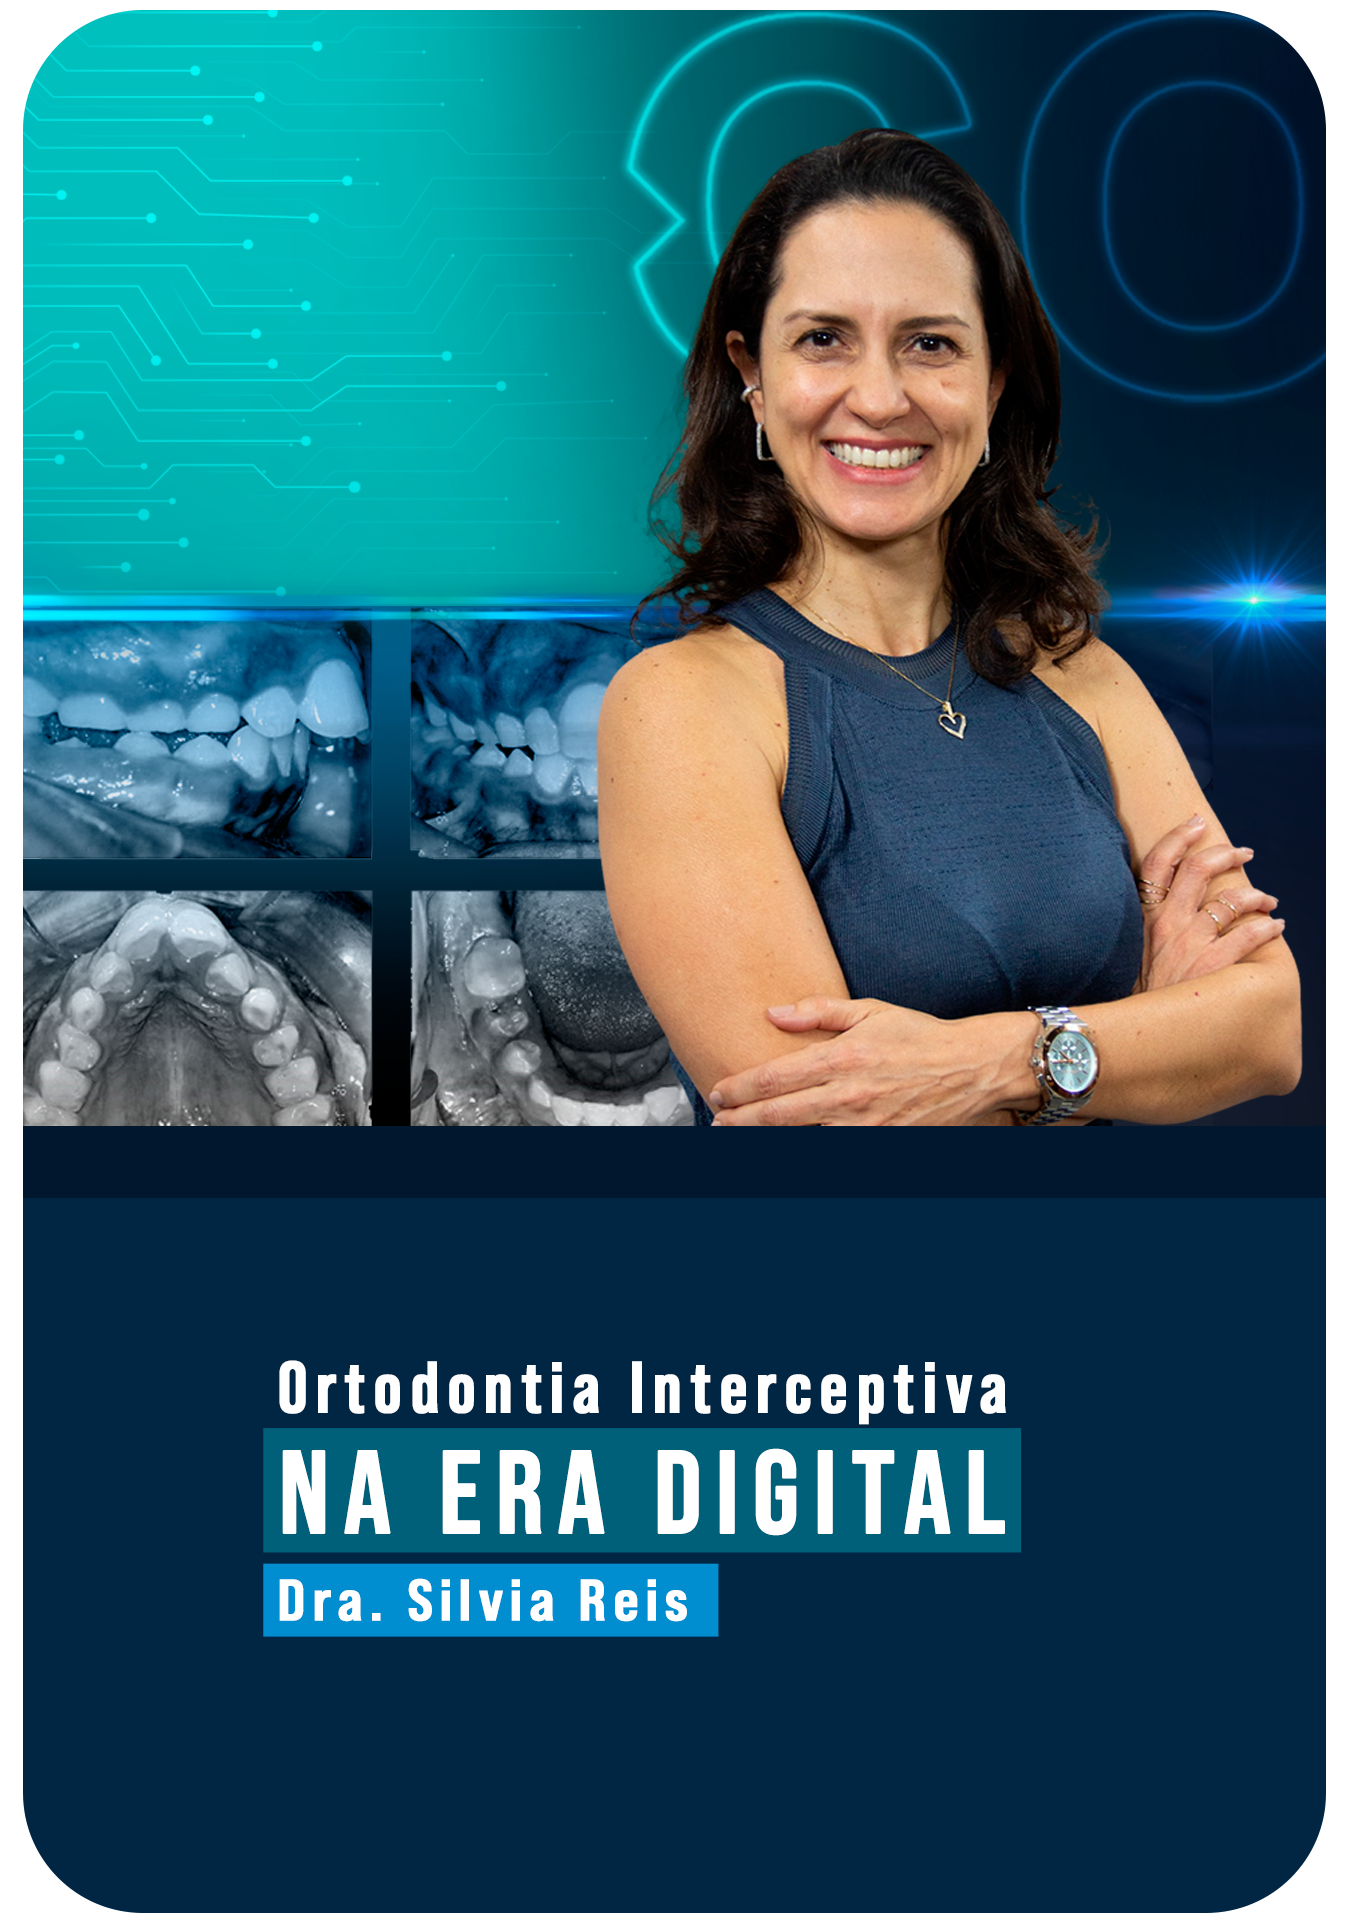 Ortodontia Interceptiva na Era Digital - ampliando possibilidades  Profa. Silvia Reis